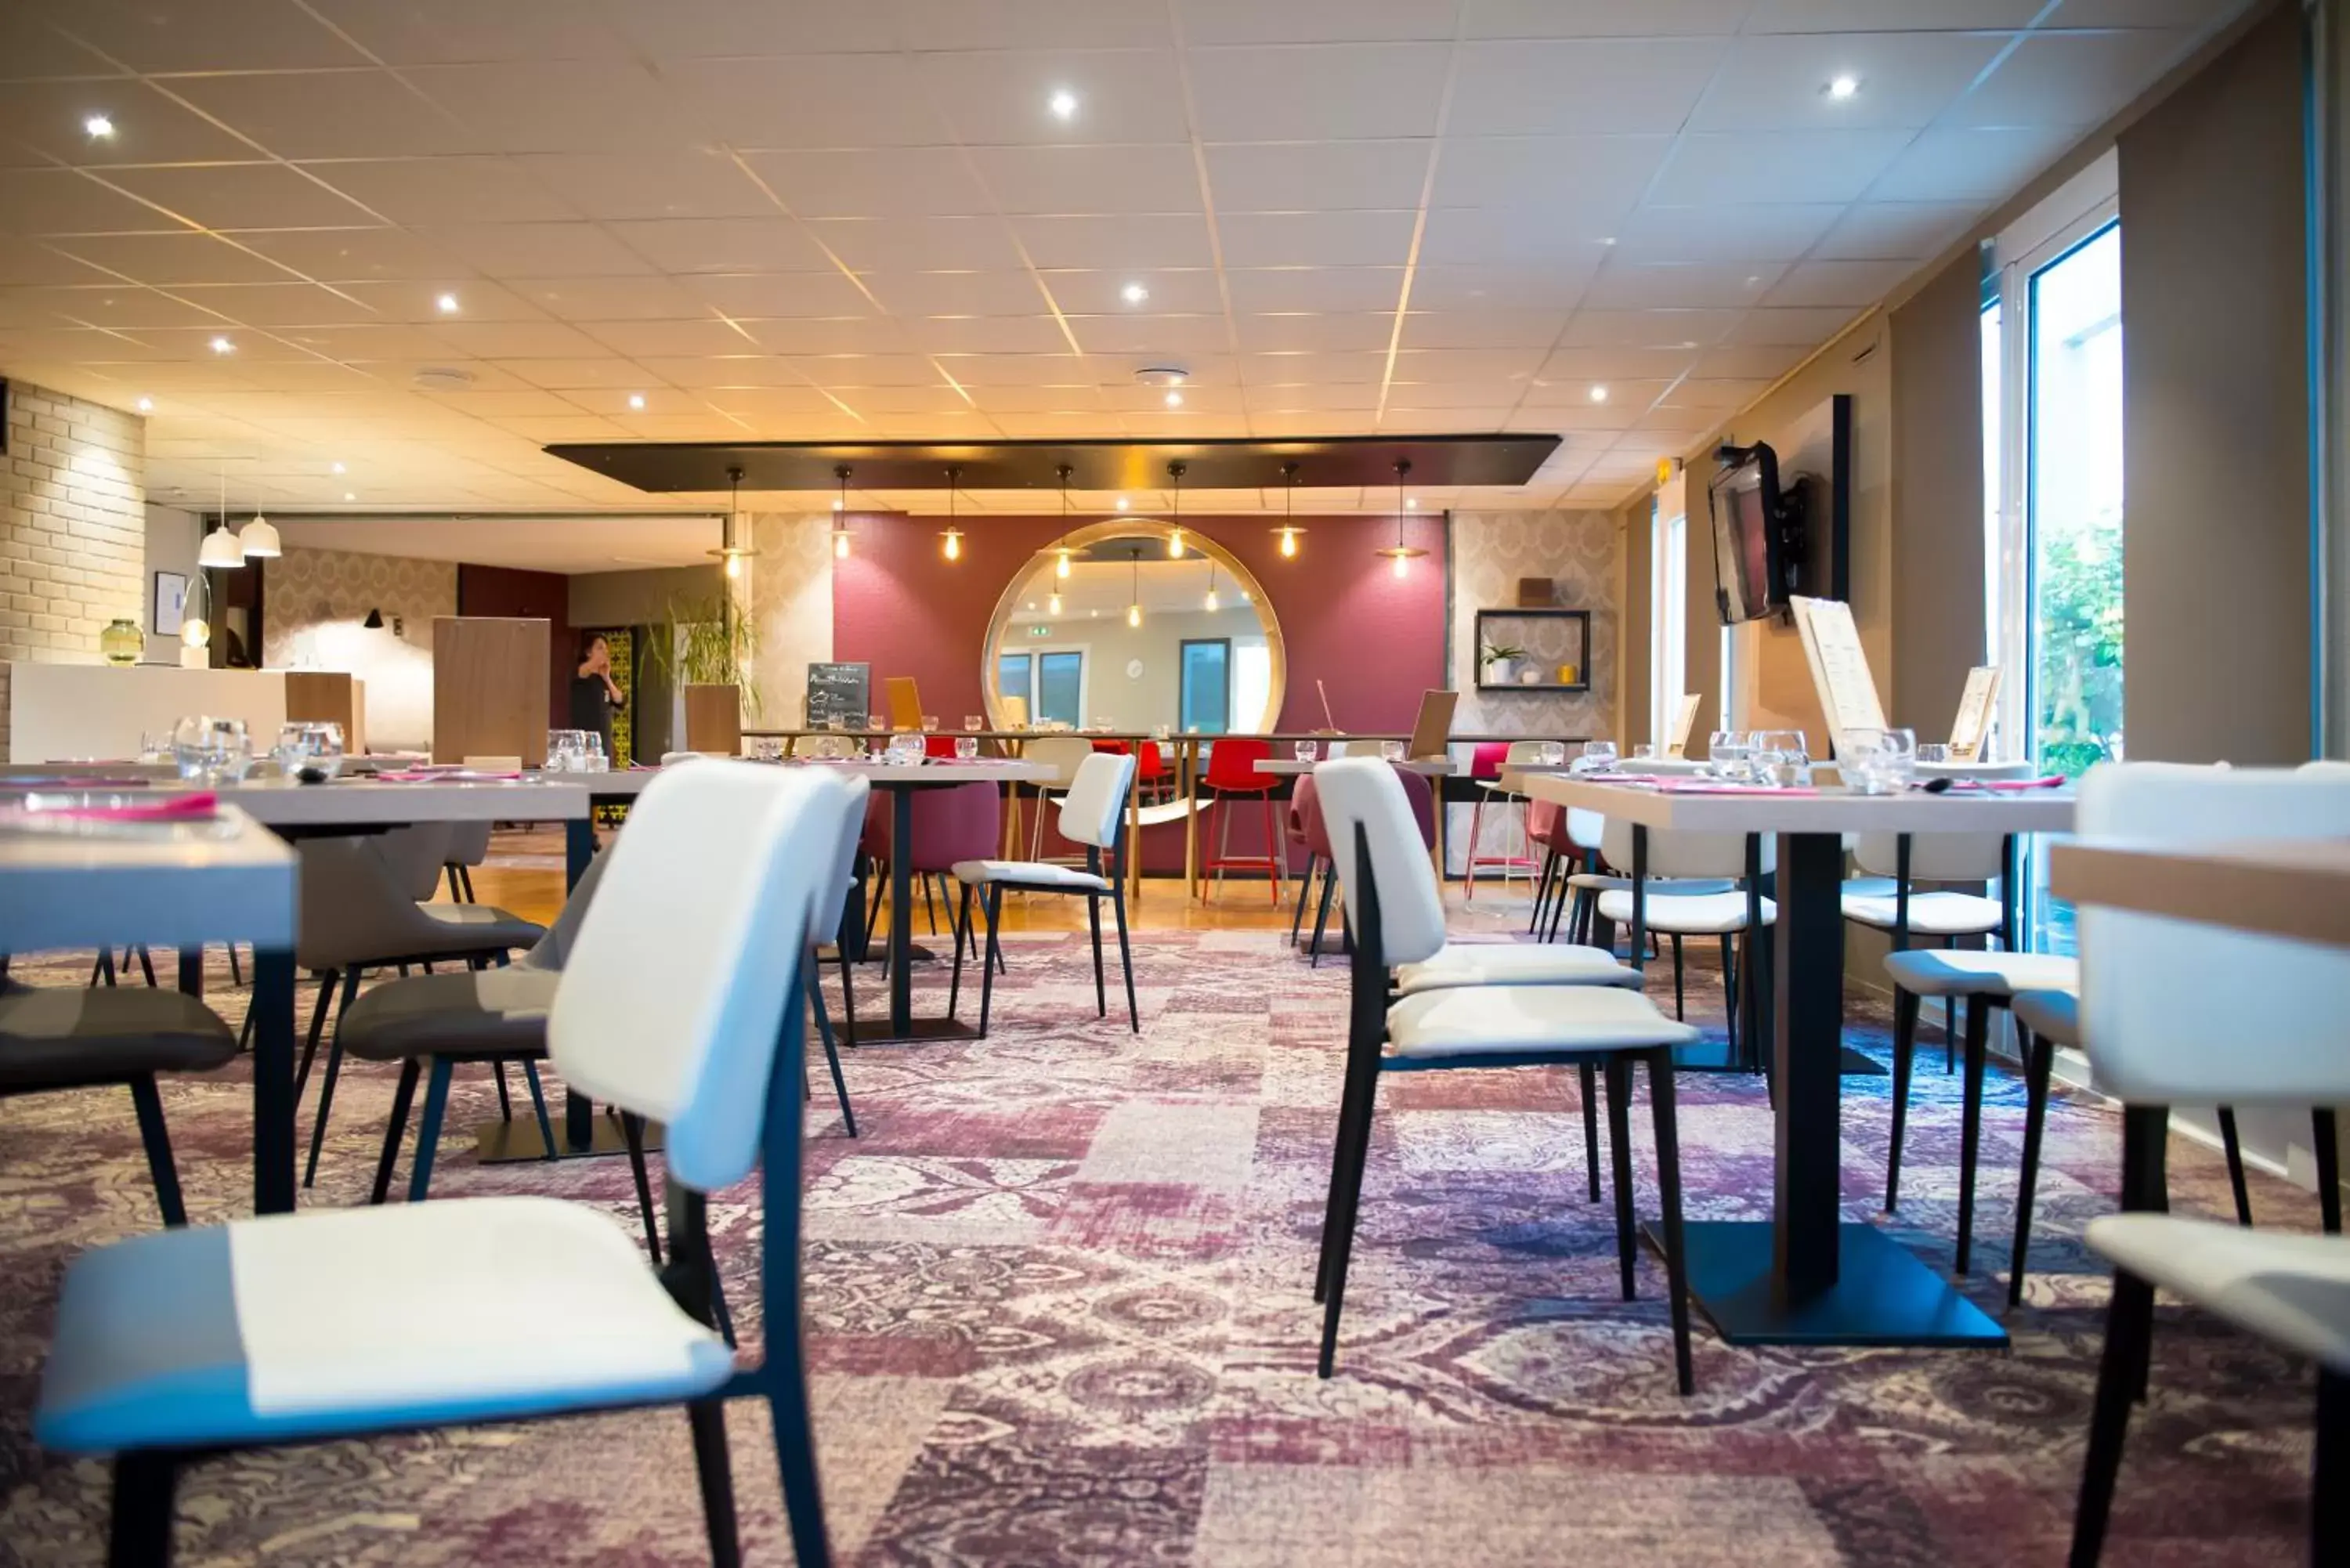 Restaurant/Places to Eat in Brit Hotel Brest Le Relecq Kerhuon